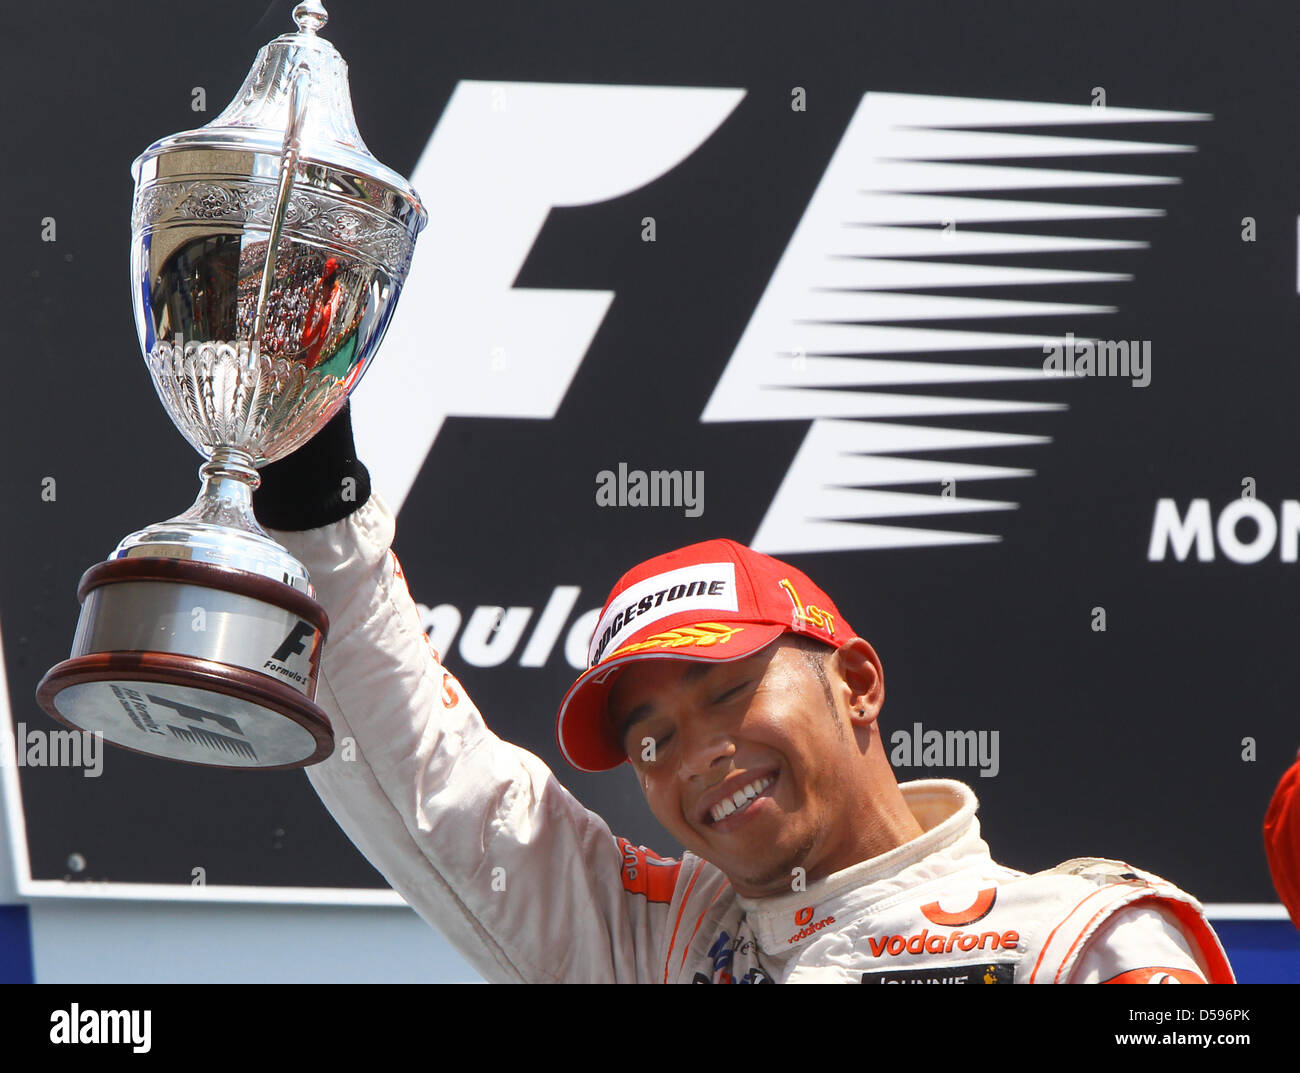 Der britische Formel-1-Rennfahrer Lewis Hamilton von McLaren Mercedes jubelt am Sonntag (13.06.2010) nach seinem Sieg beim Großen Preis von Kanada auf der Rennstrecke 'Gille Villeneuve' in Montreal (Kanada). Foto: Jens Büttner dpa Stock Photo